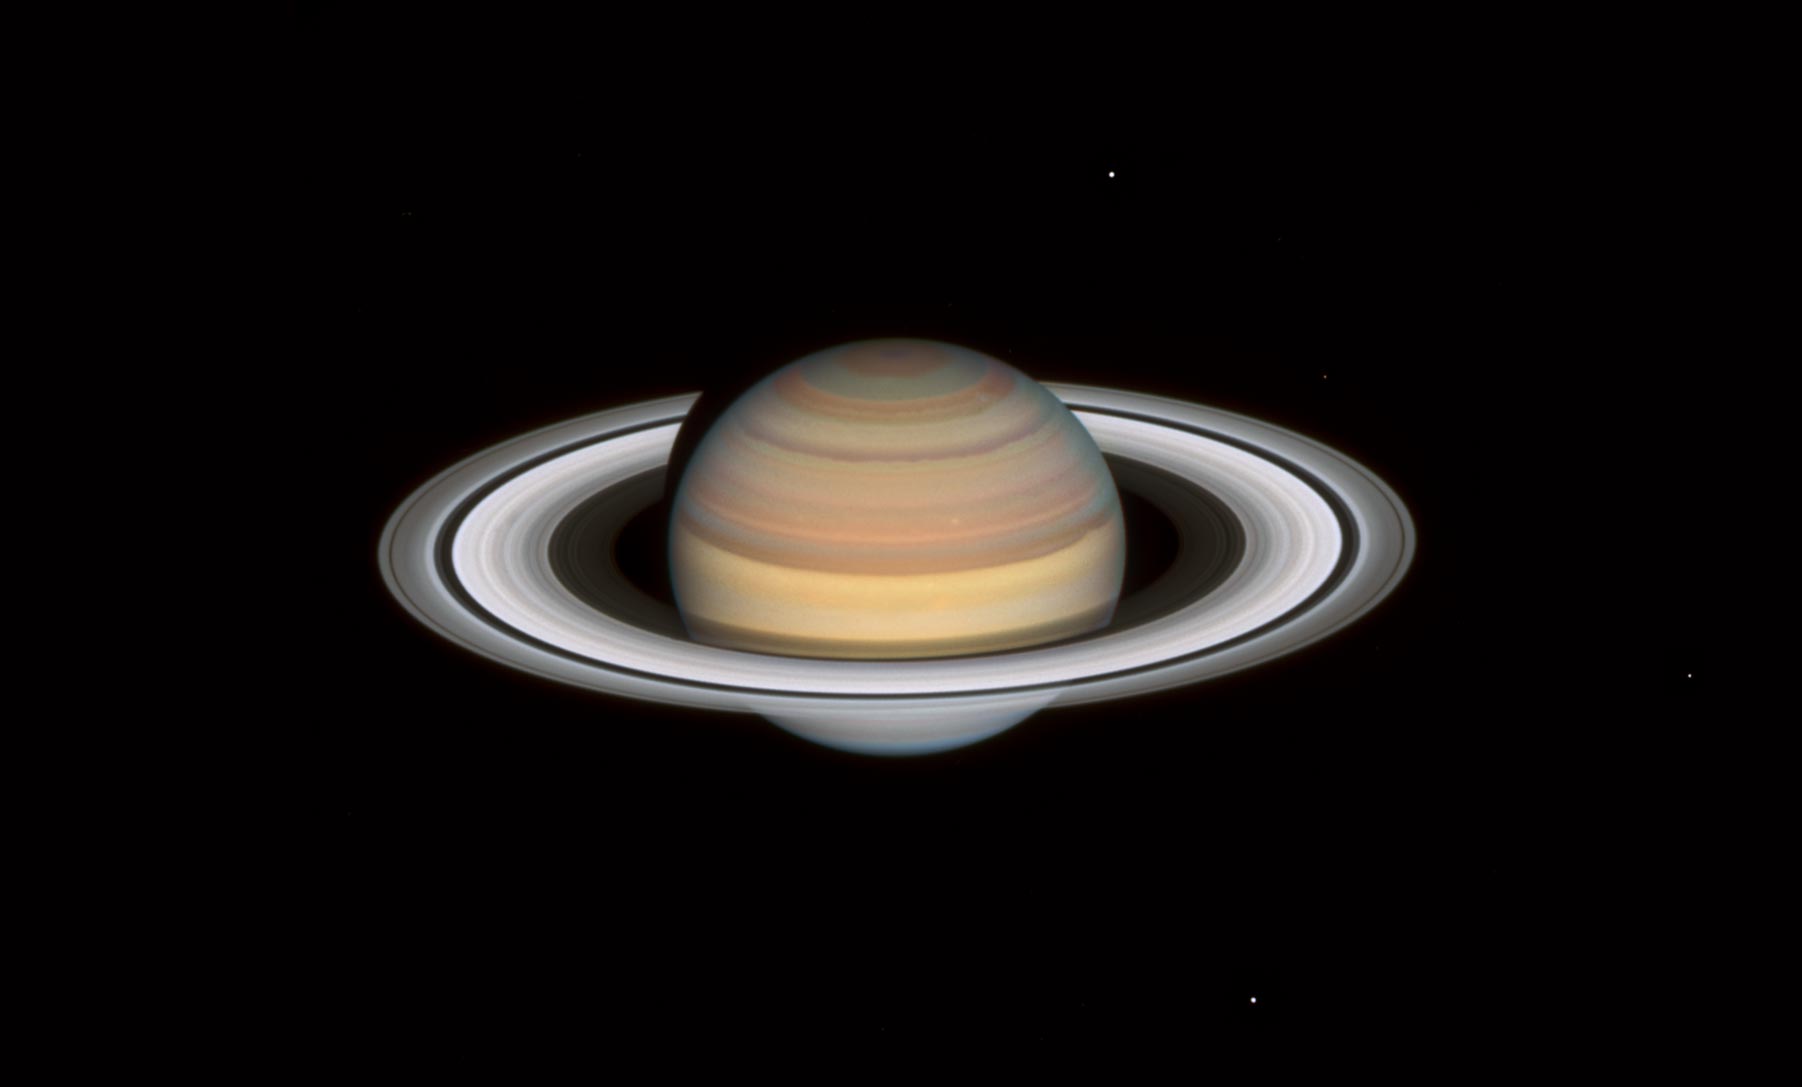 哈勃2021年对土星的观察显示，该行星北半球的带状区域有着快速和极端的颜色变化。作为比较，上面的图像是由哈勃太空望远镜在其外太阳系的大巡游中拍摄的。